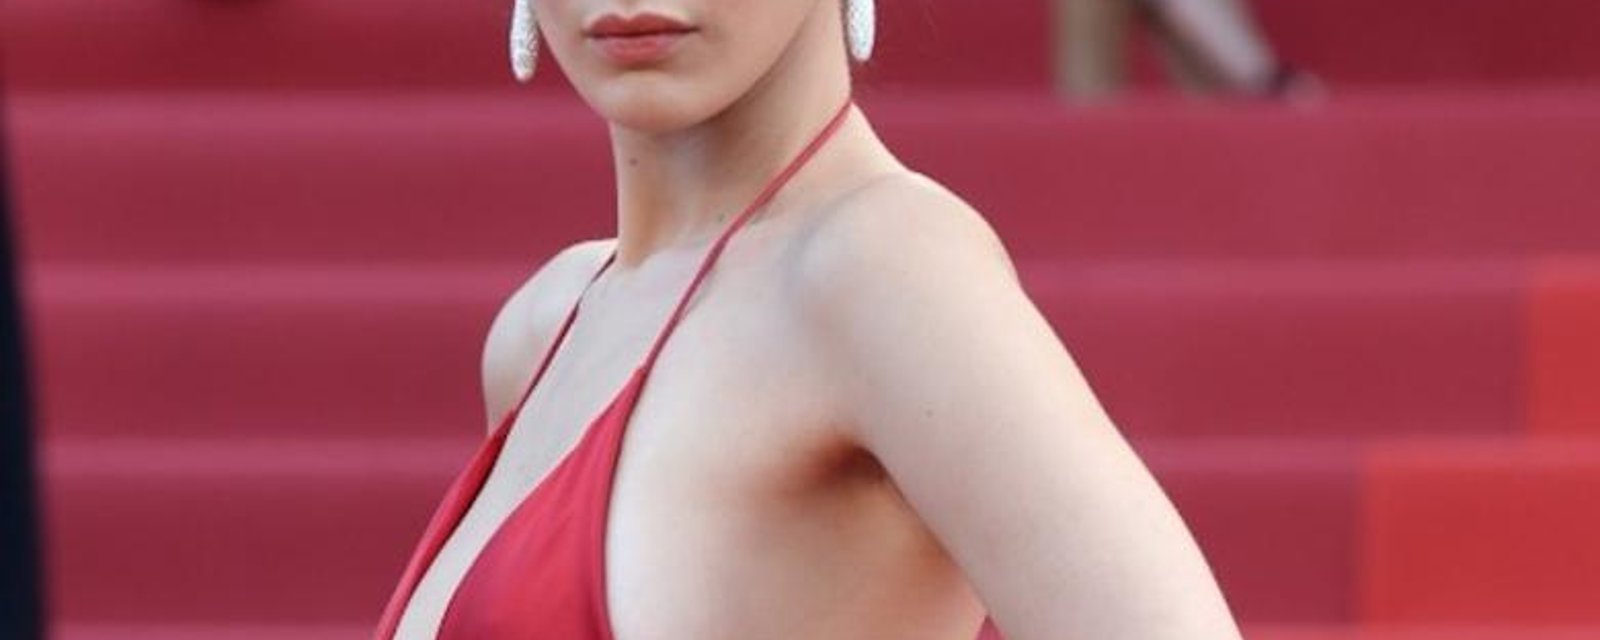 Une star se présente (presque) nue sur le tapis rouge de Cannes...